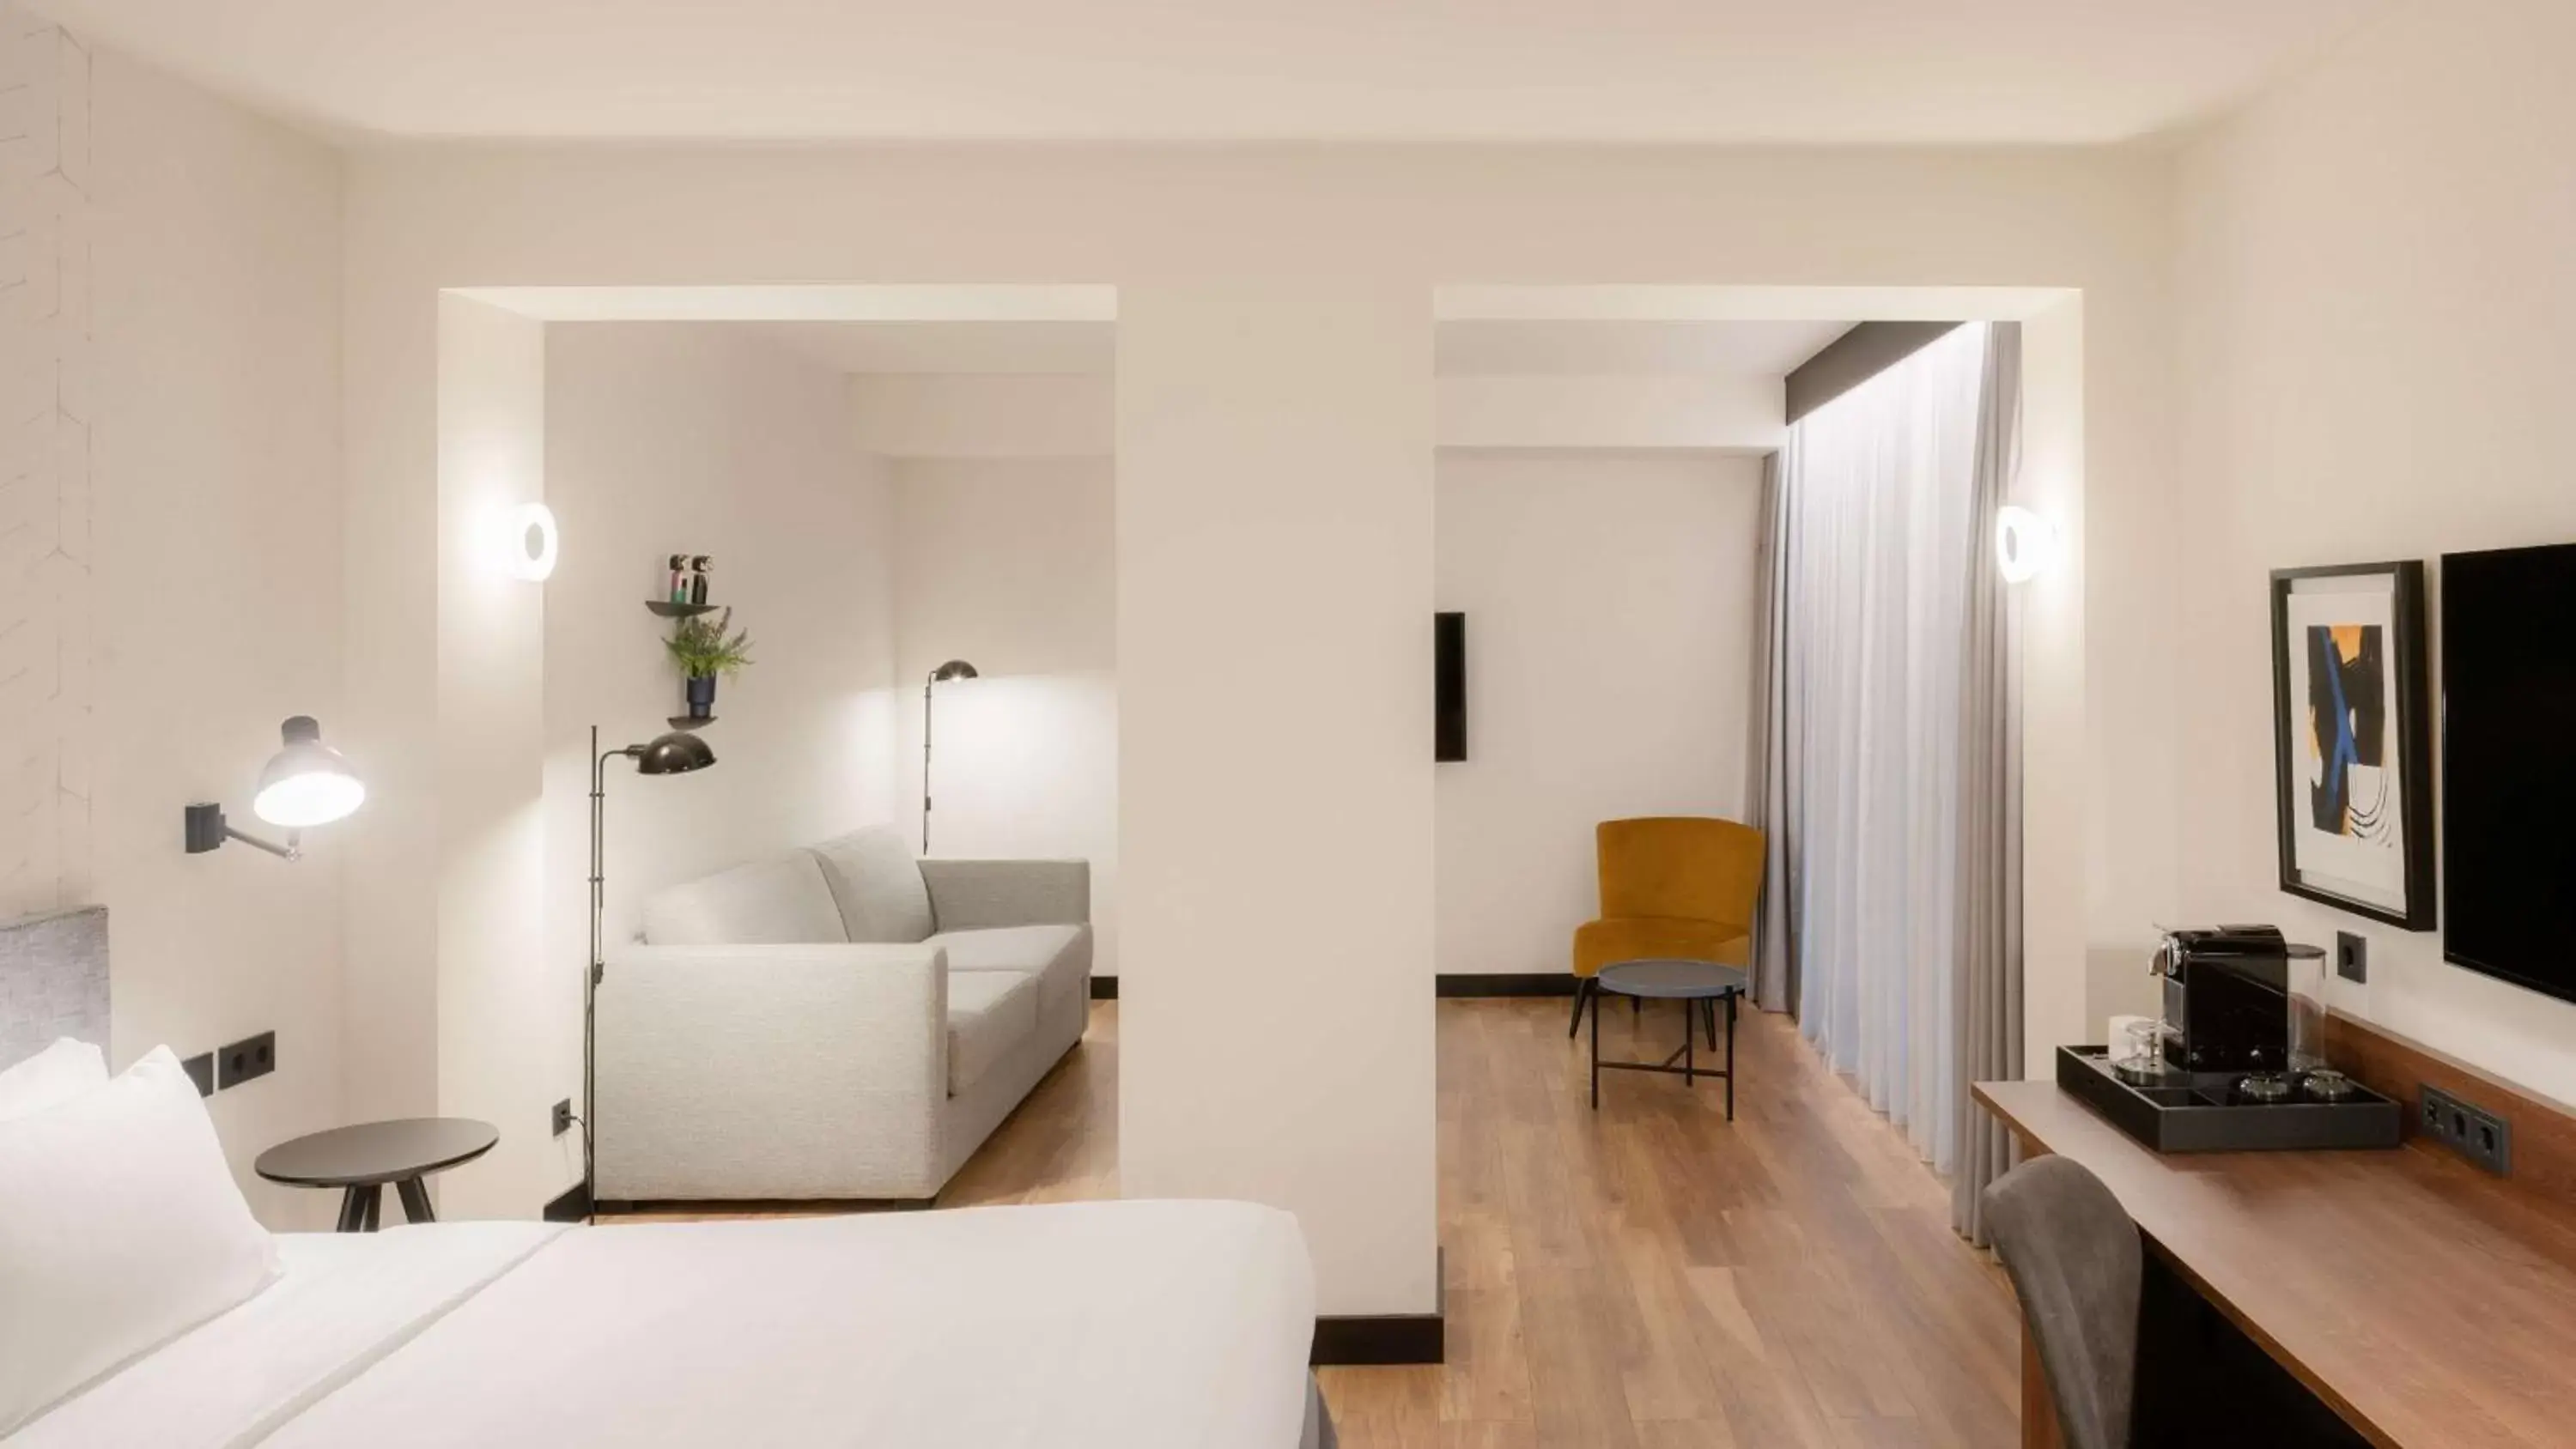 Photo of the whole room, Seating Area in Radisson Blu 1882 Hotel, Barcelona Sagrada Familia